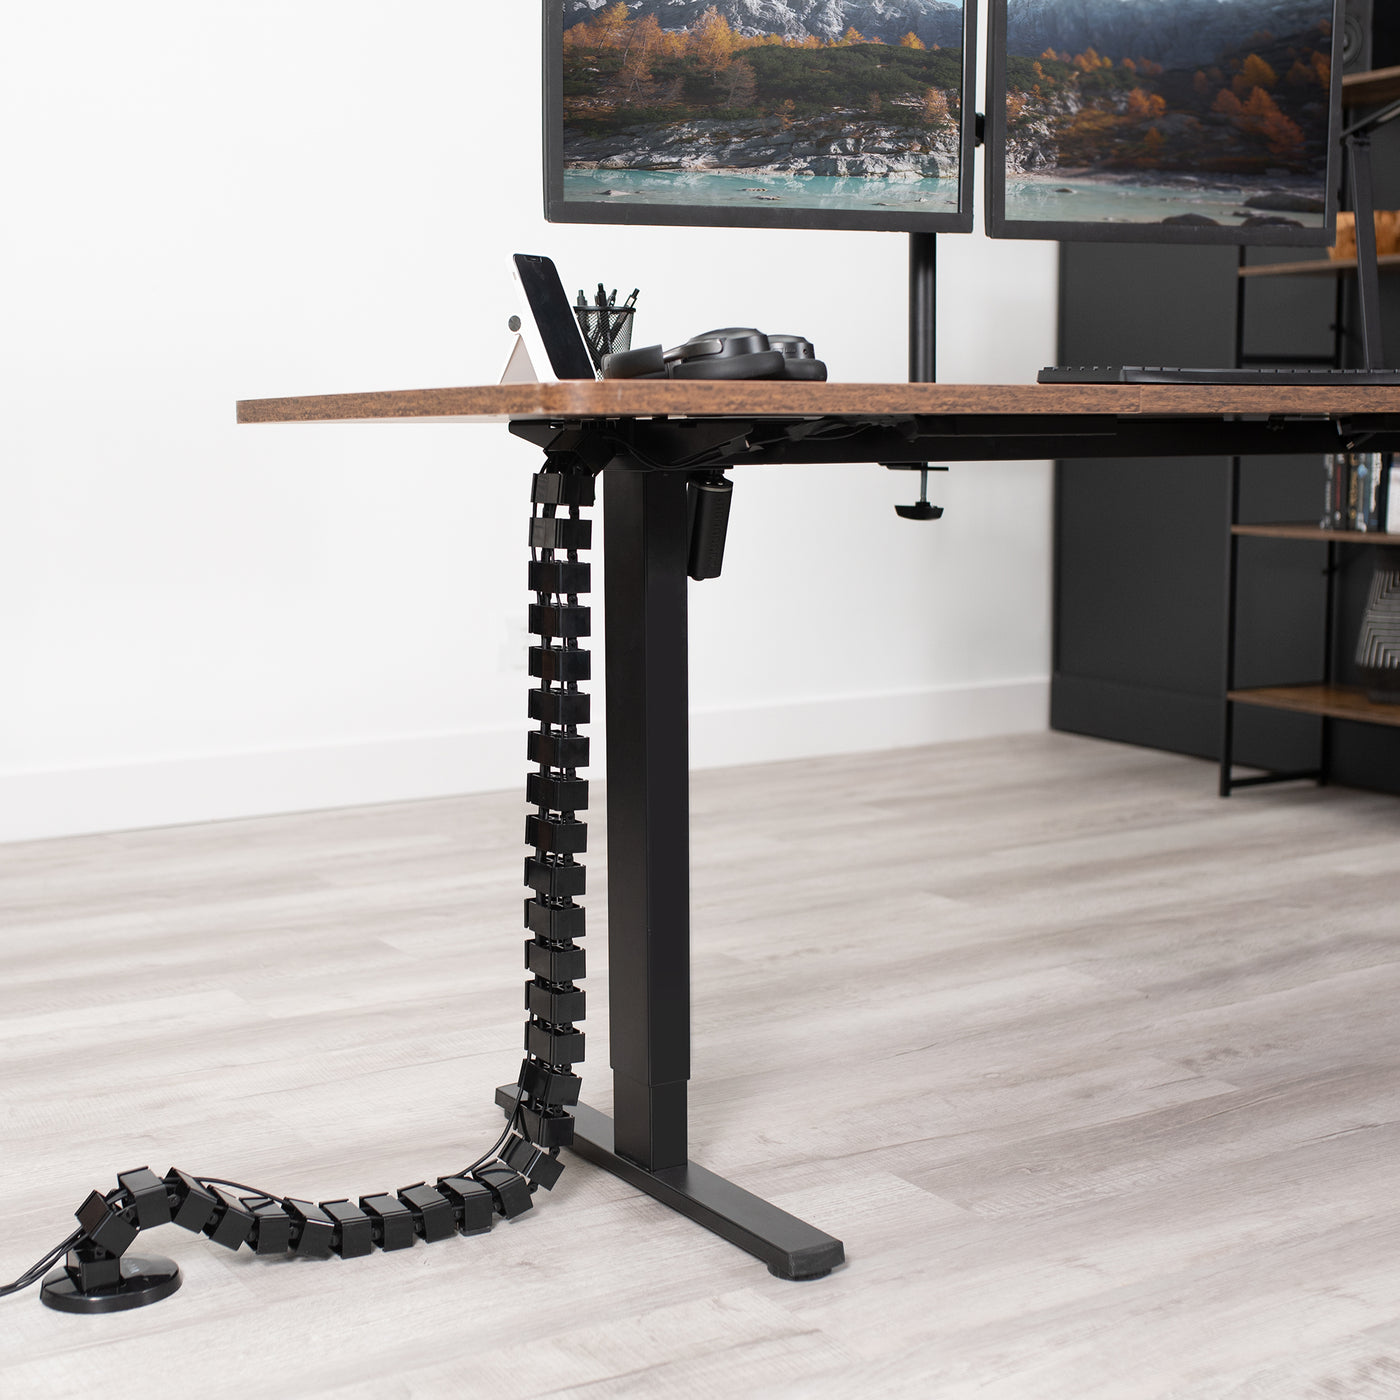 Cable Management for Desks